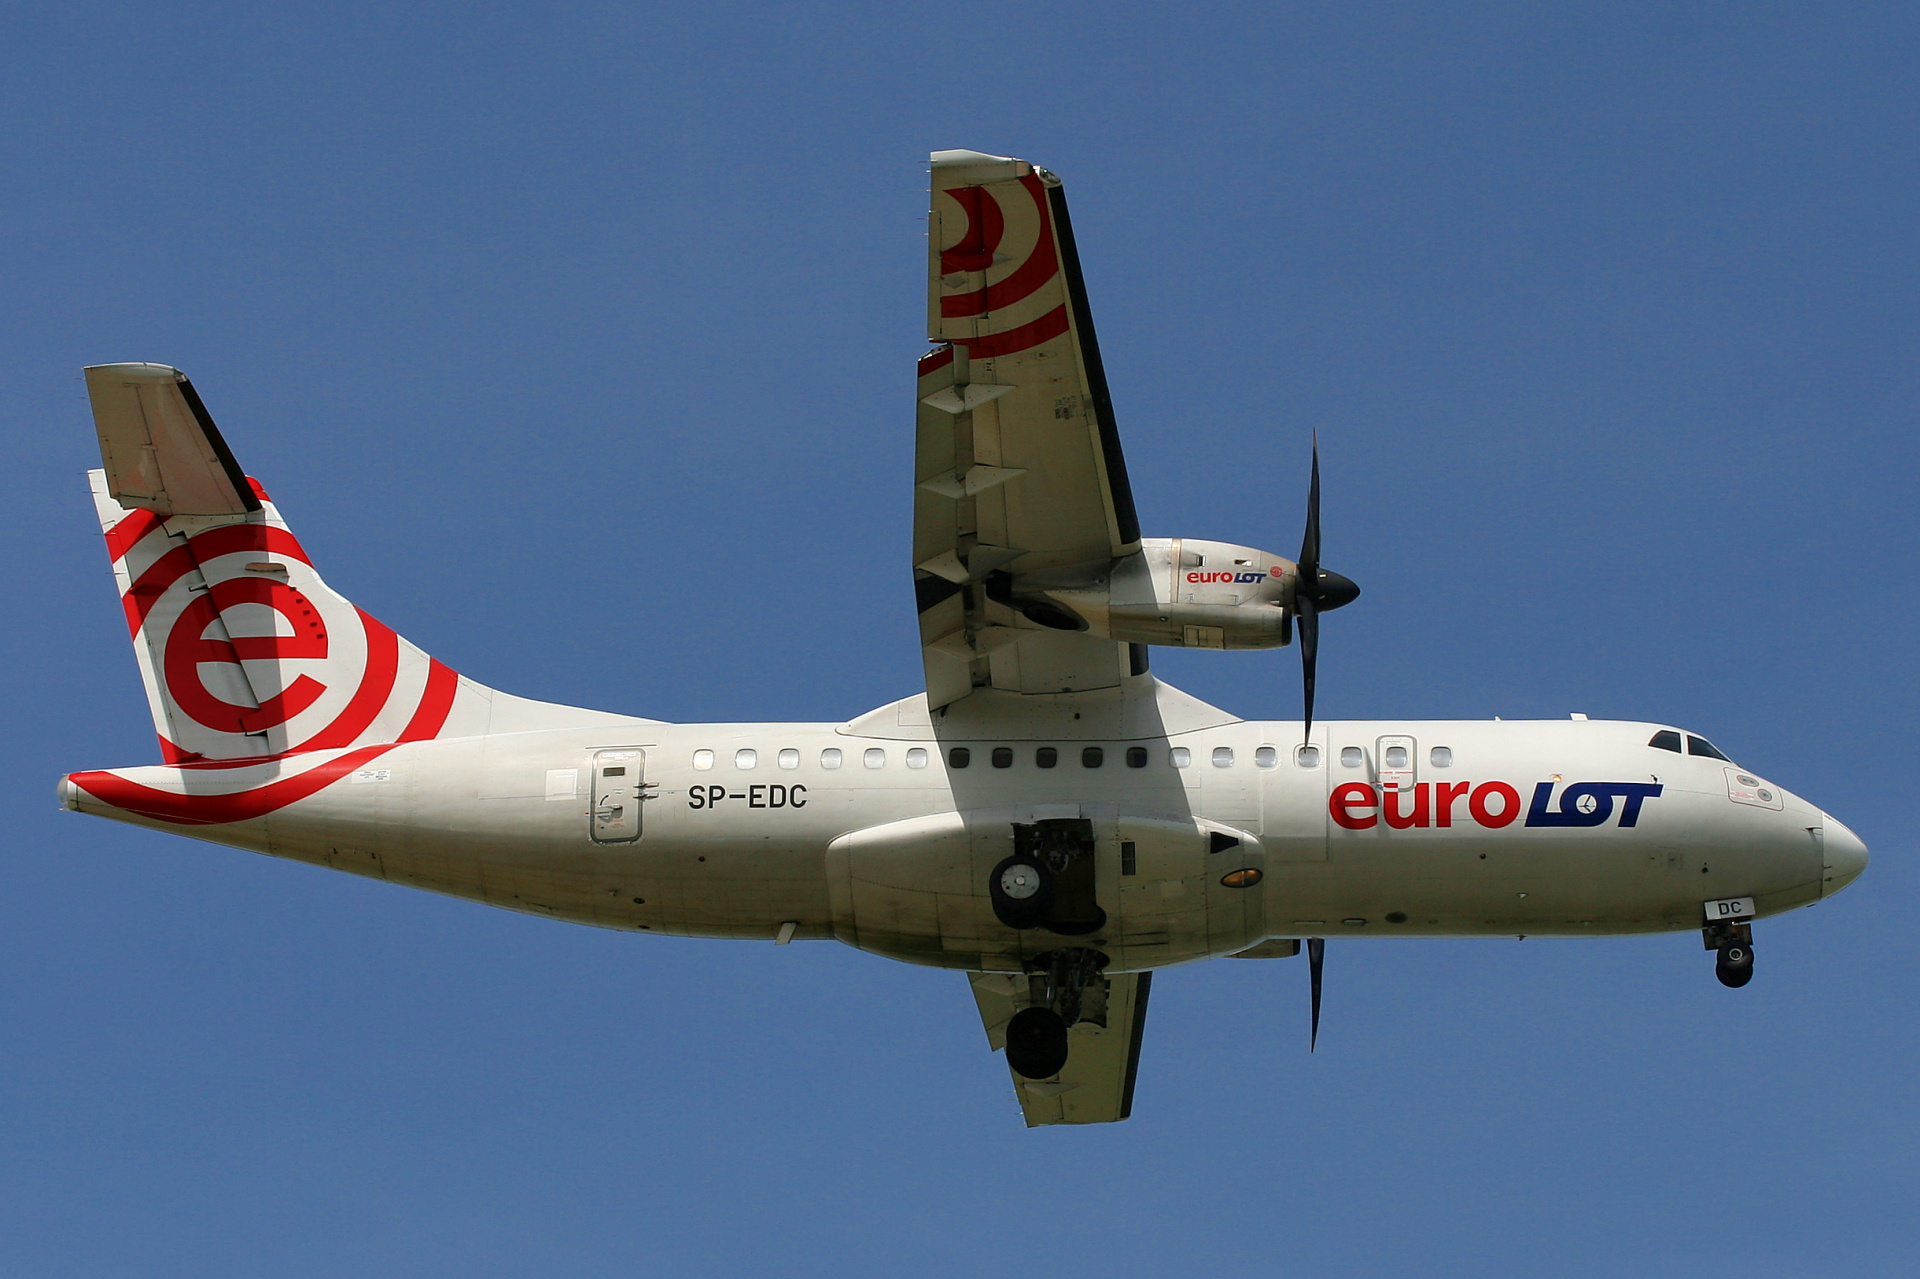 SP-EDC (Aircraft » EPWA Spotting » ATR 42 » EuroLOT)